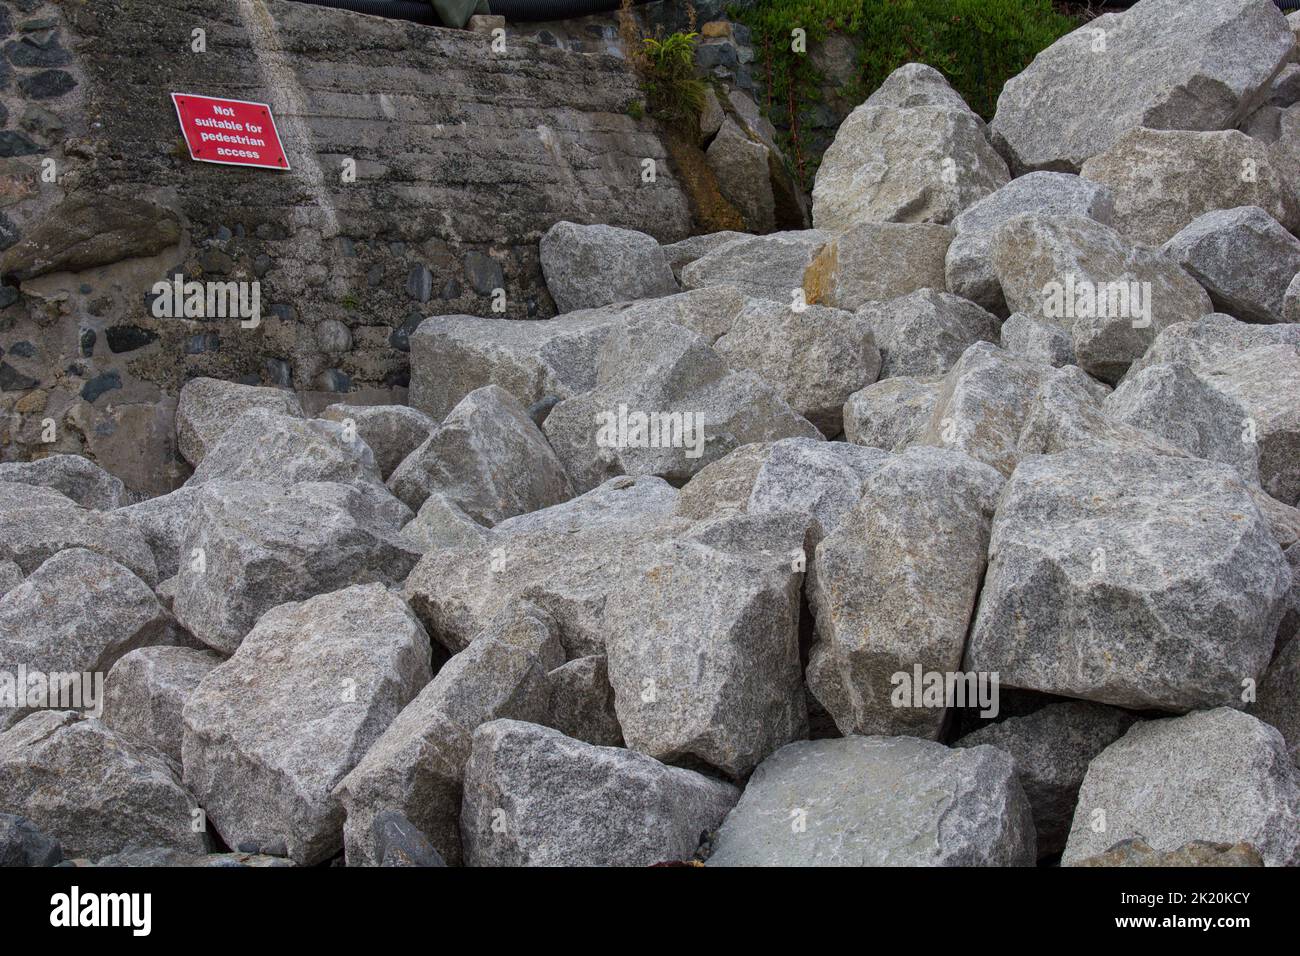 Armure de roche transportée à Coverack Bay, Cornwall. Renforcer le mur de la mer contre les dommages causés par les tempêtes et l'érosion. Signe ironique avertissant les piétons. Banque D'Images